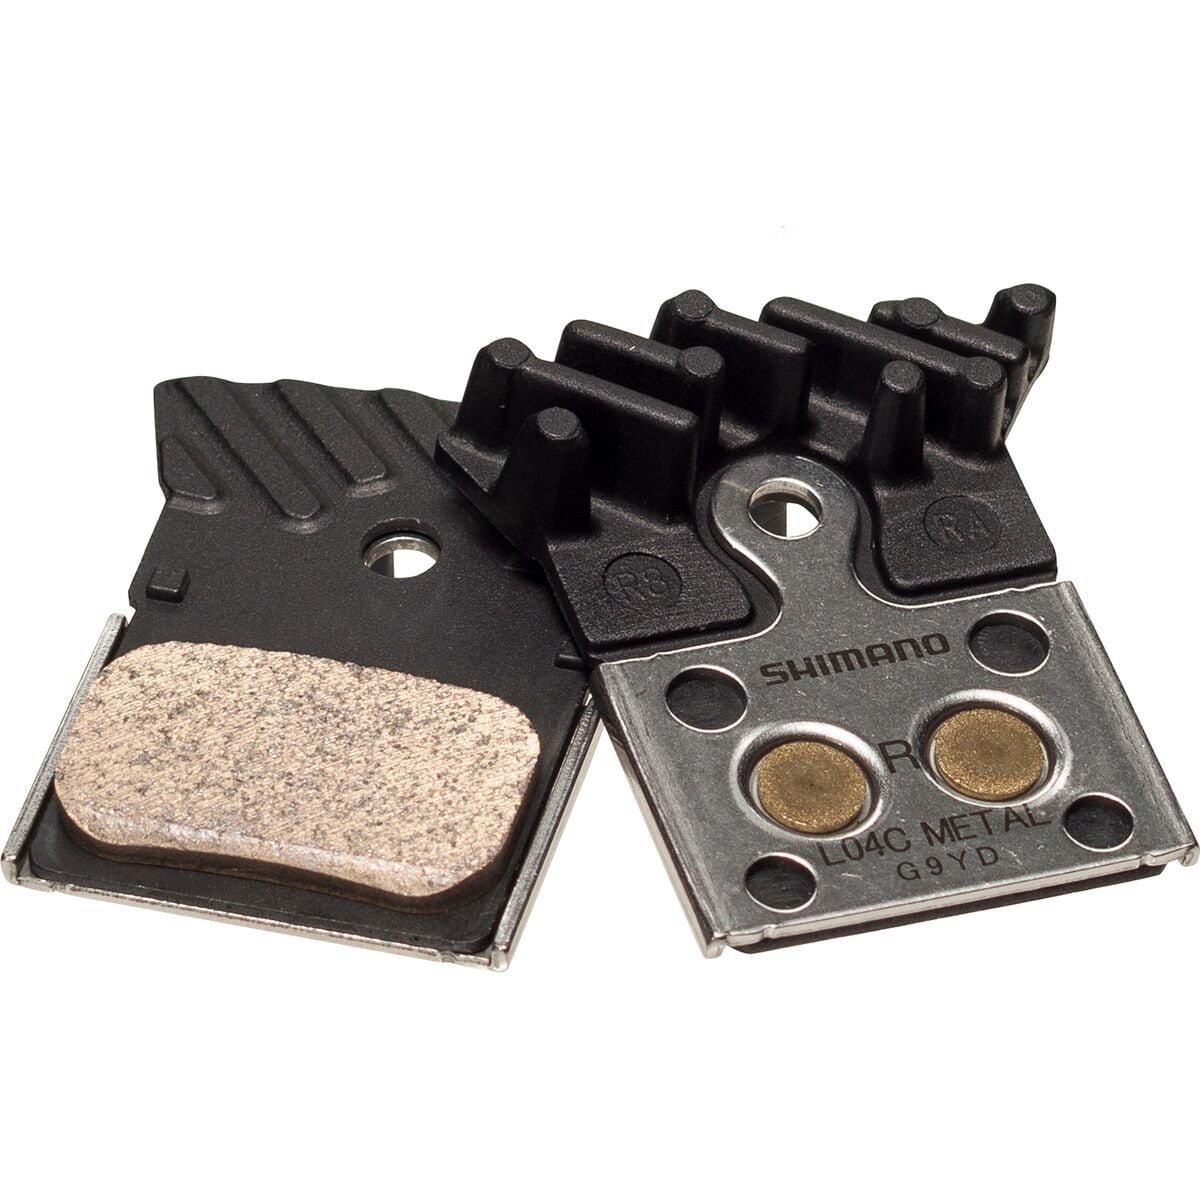 L04c металлические дисковые тормозные колодки Shimano, металлический тормозные колодки clarks vx811c для shimano и tektro